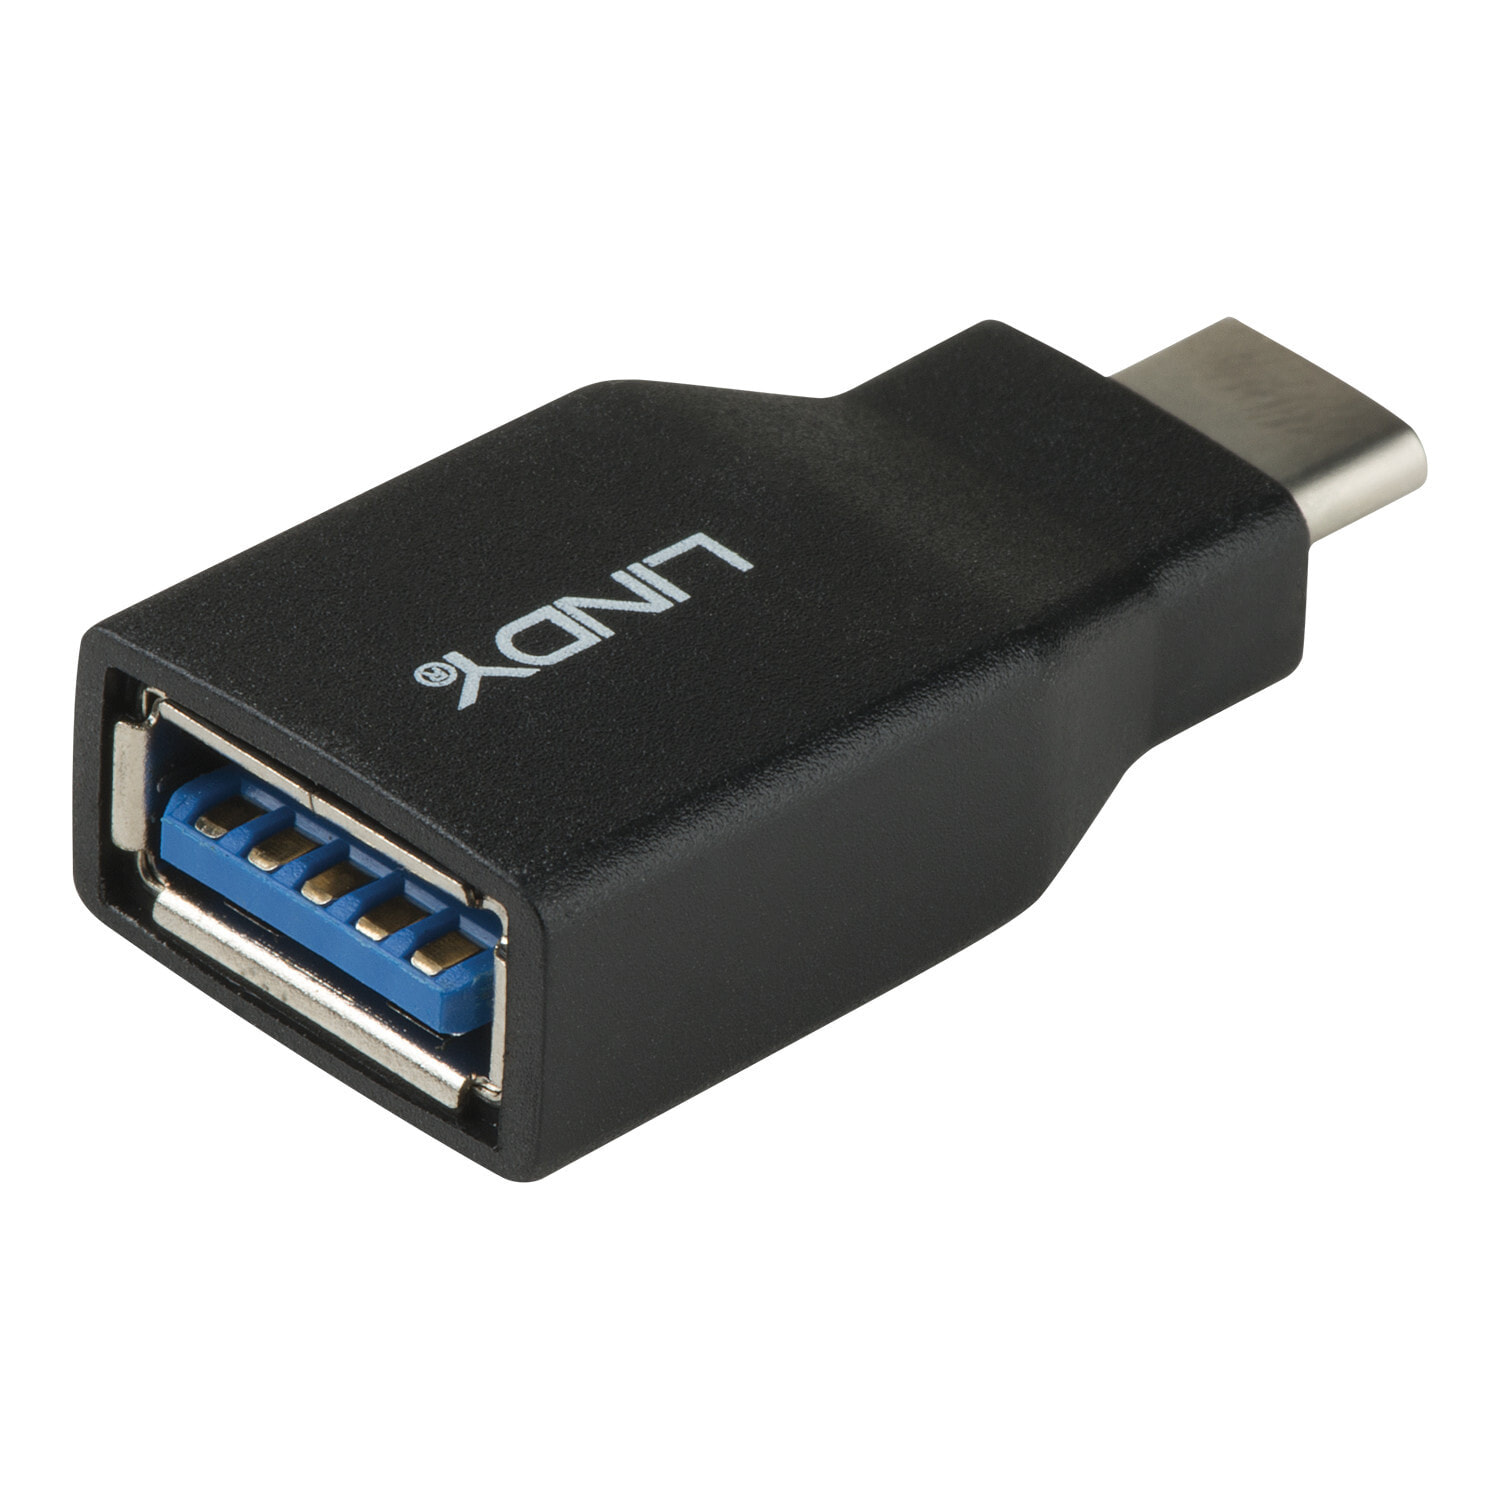 Usb 2.0 usb 3.2 gen1. USB 3.2 gen2 Type-c. USB 3.2 gen1 Type-a разъем. USB 3.2 Gen 1 разъем. USB C 3.2 gen1.